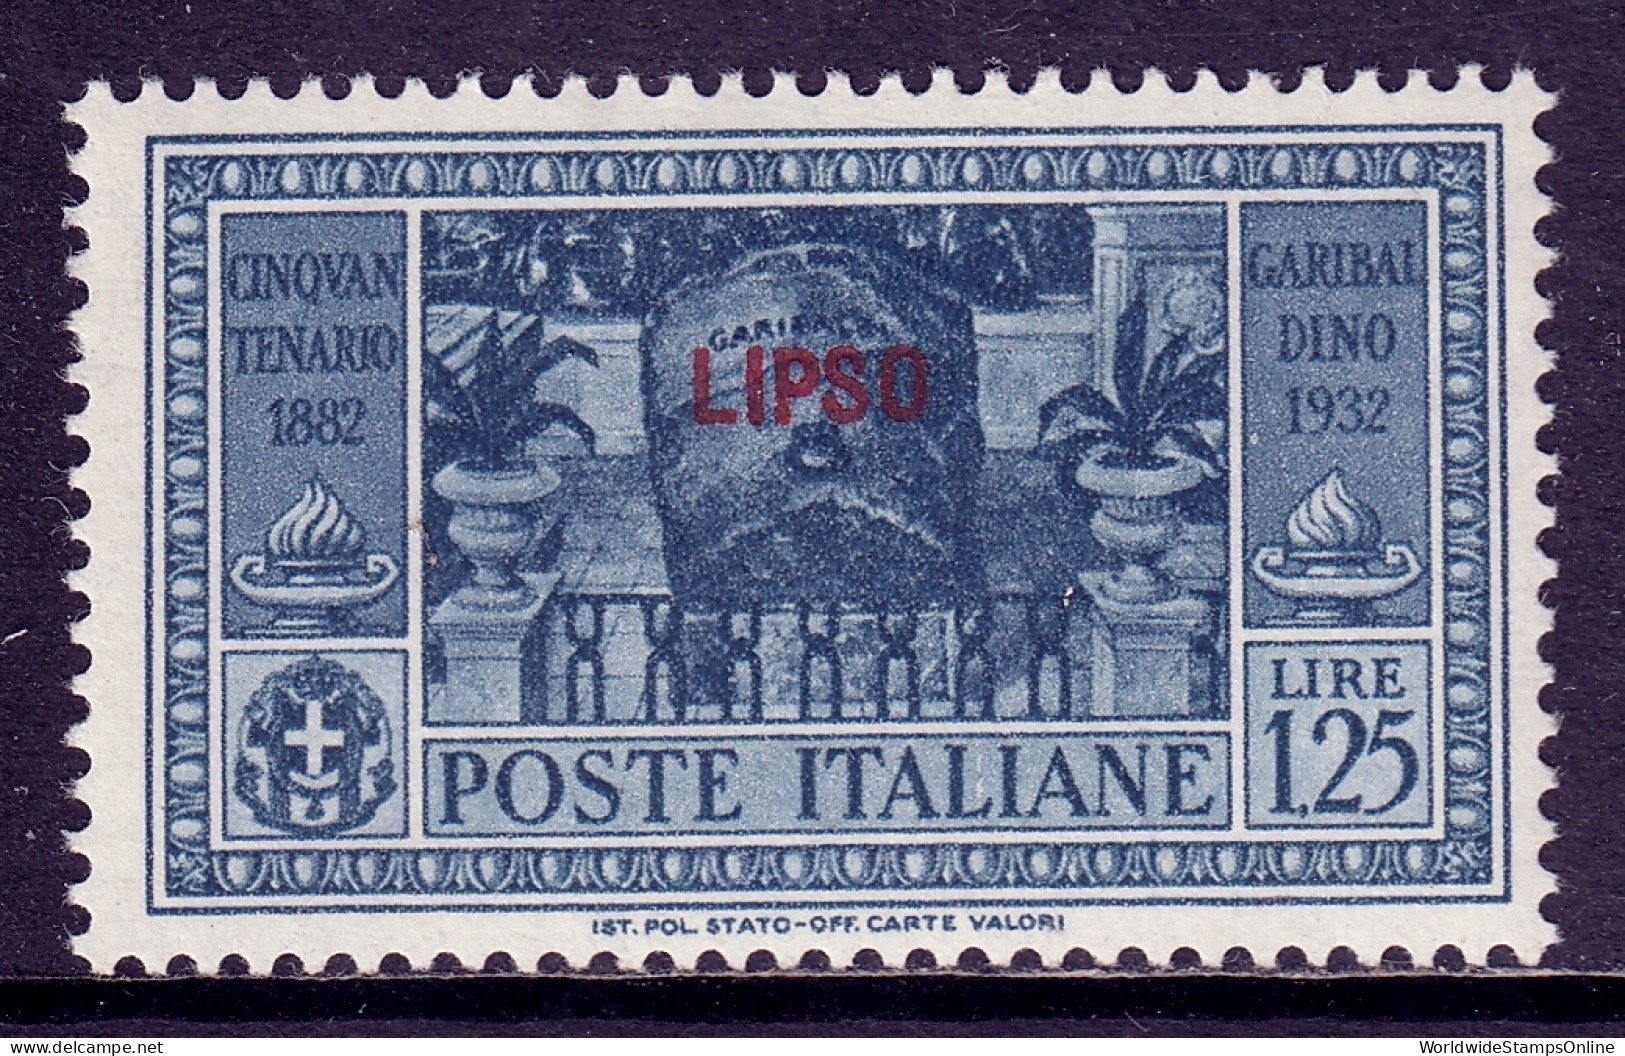 Italy (Lisso) - Scott #23 - MH - SCV $18 - Egeo (Lipso)